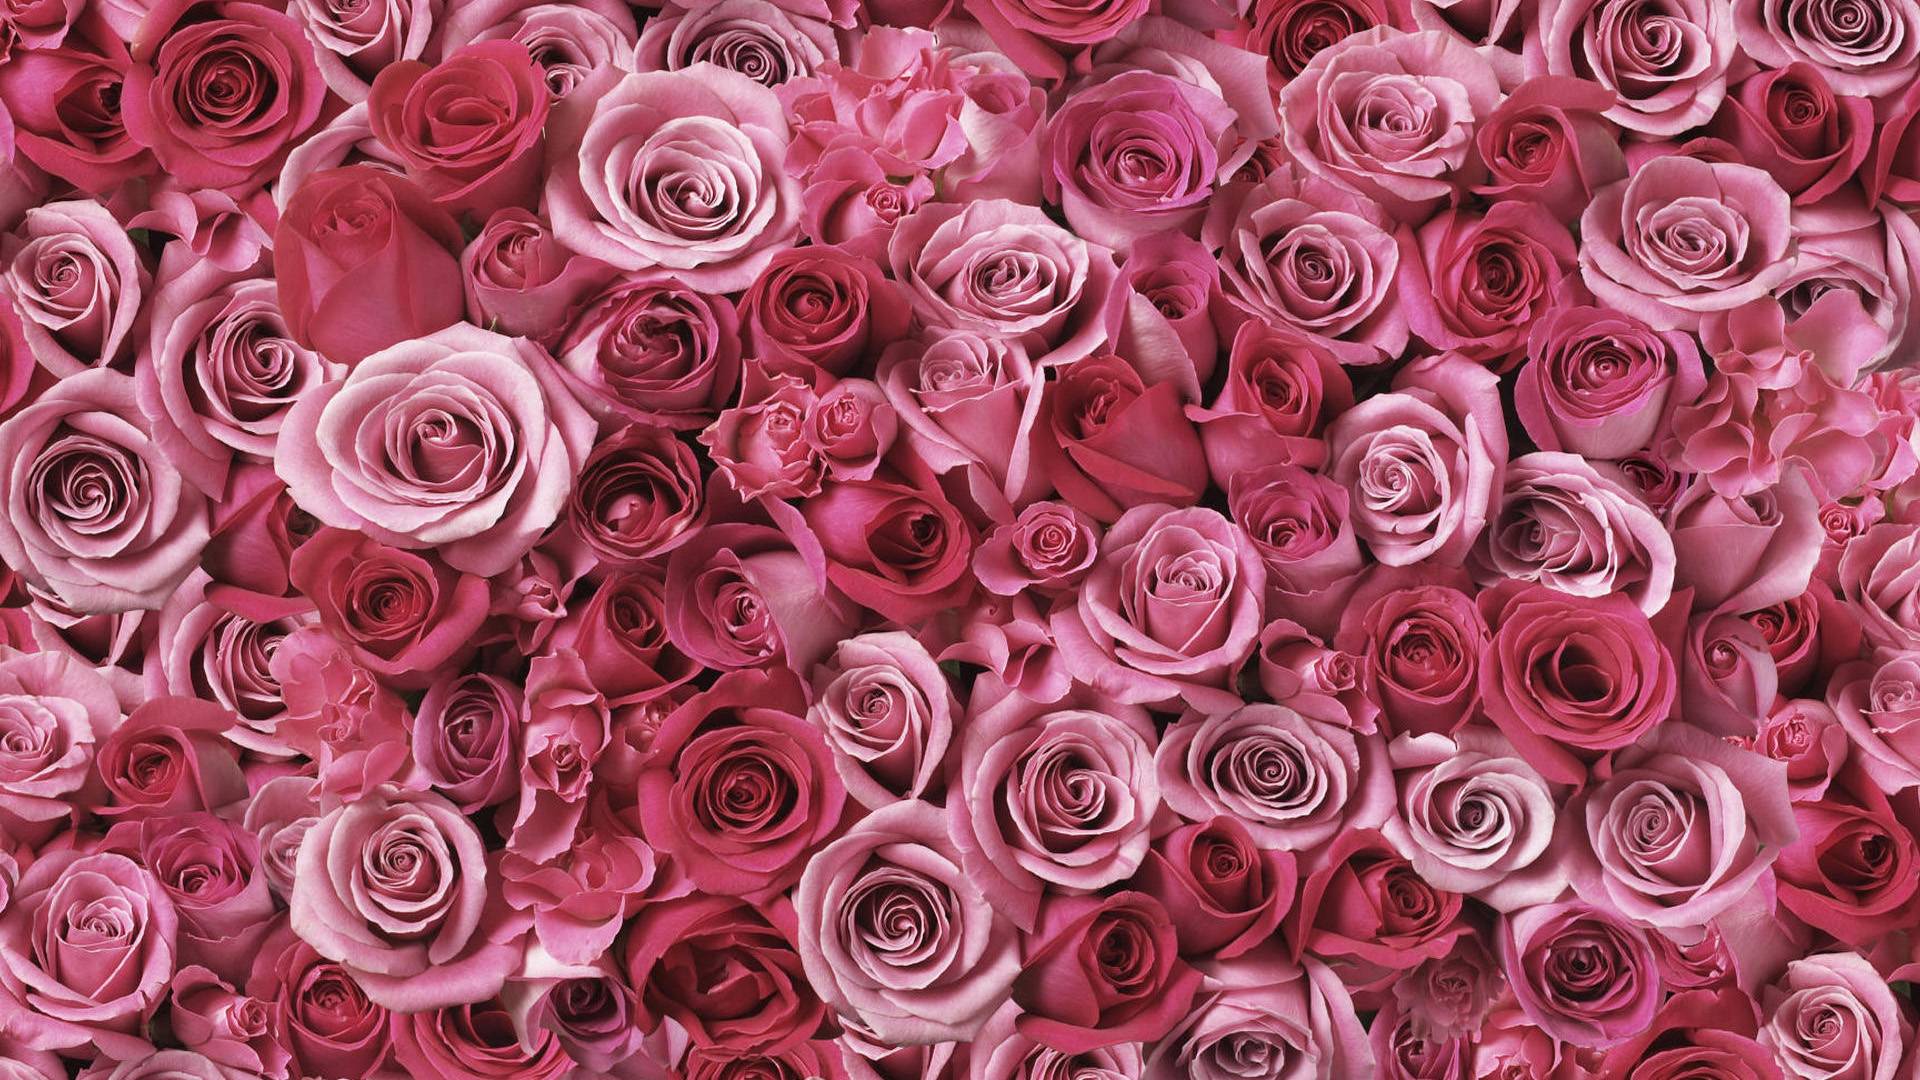 Rose Flowers 2016 4K Wallpaper